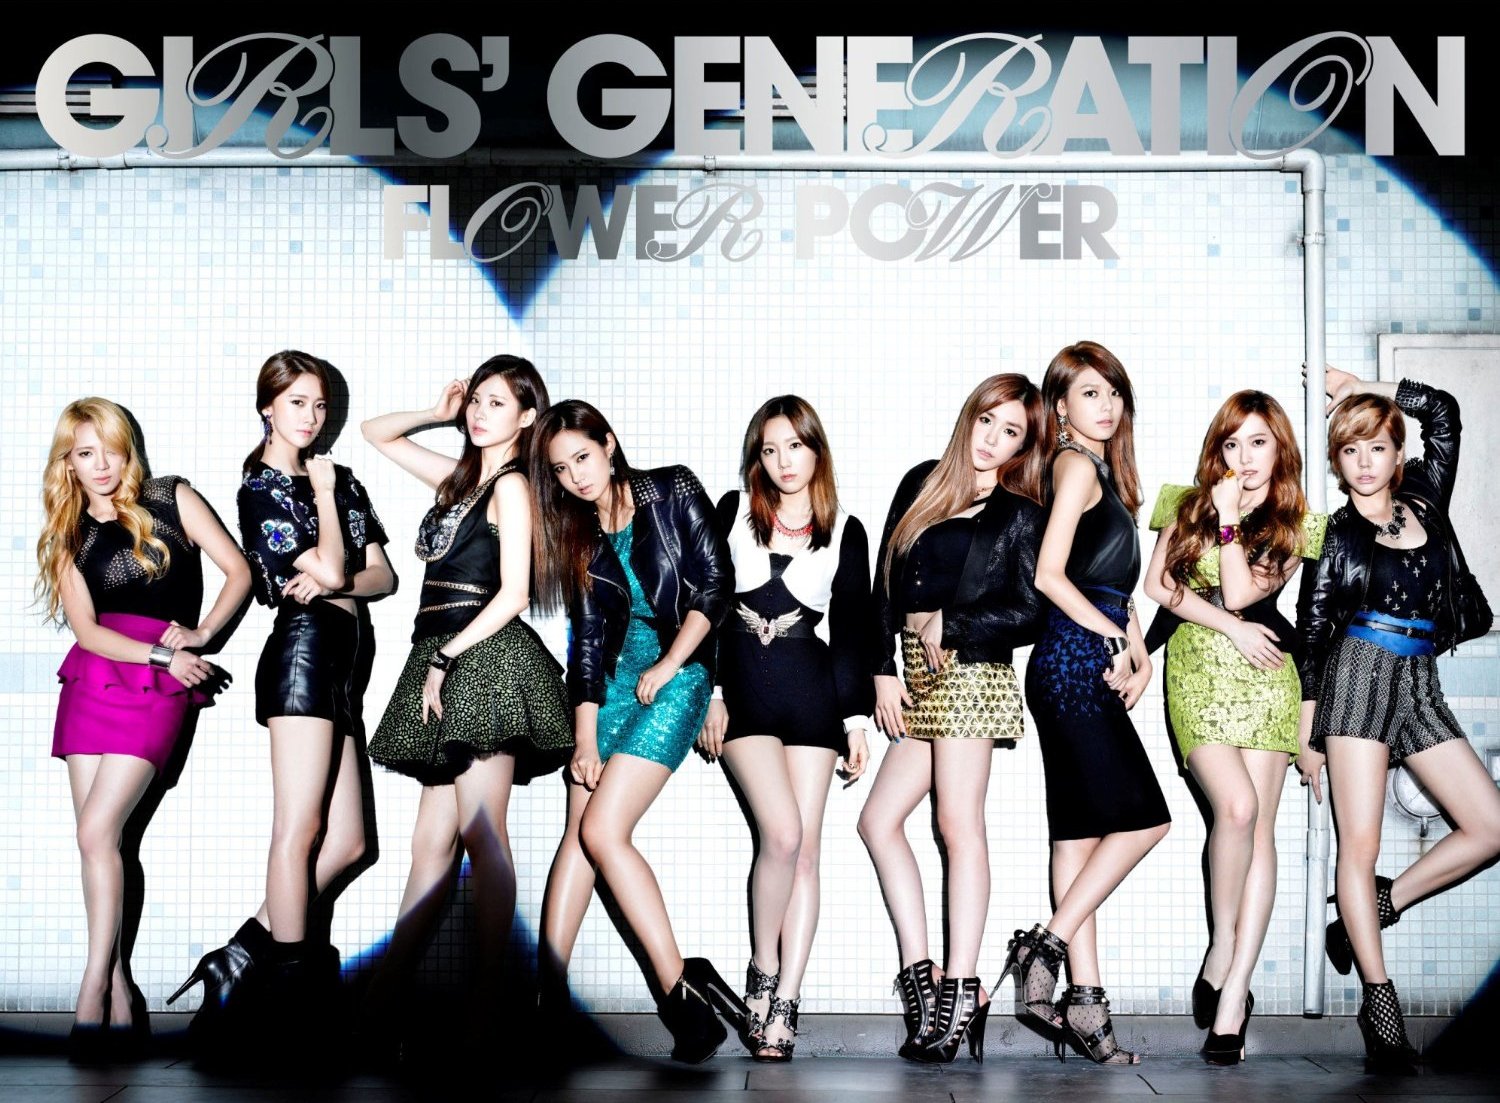 SNSD+Girls+Generation+FLOWER+POWER+Wallp